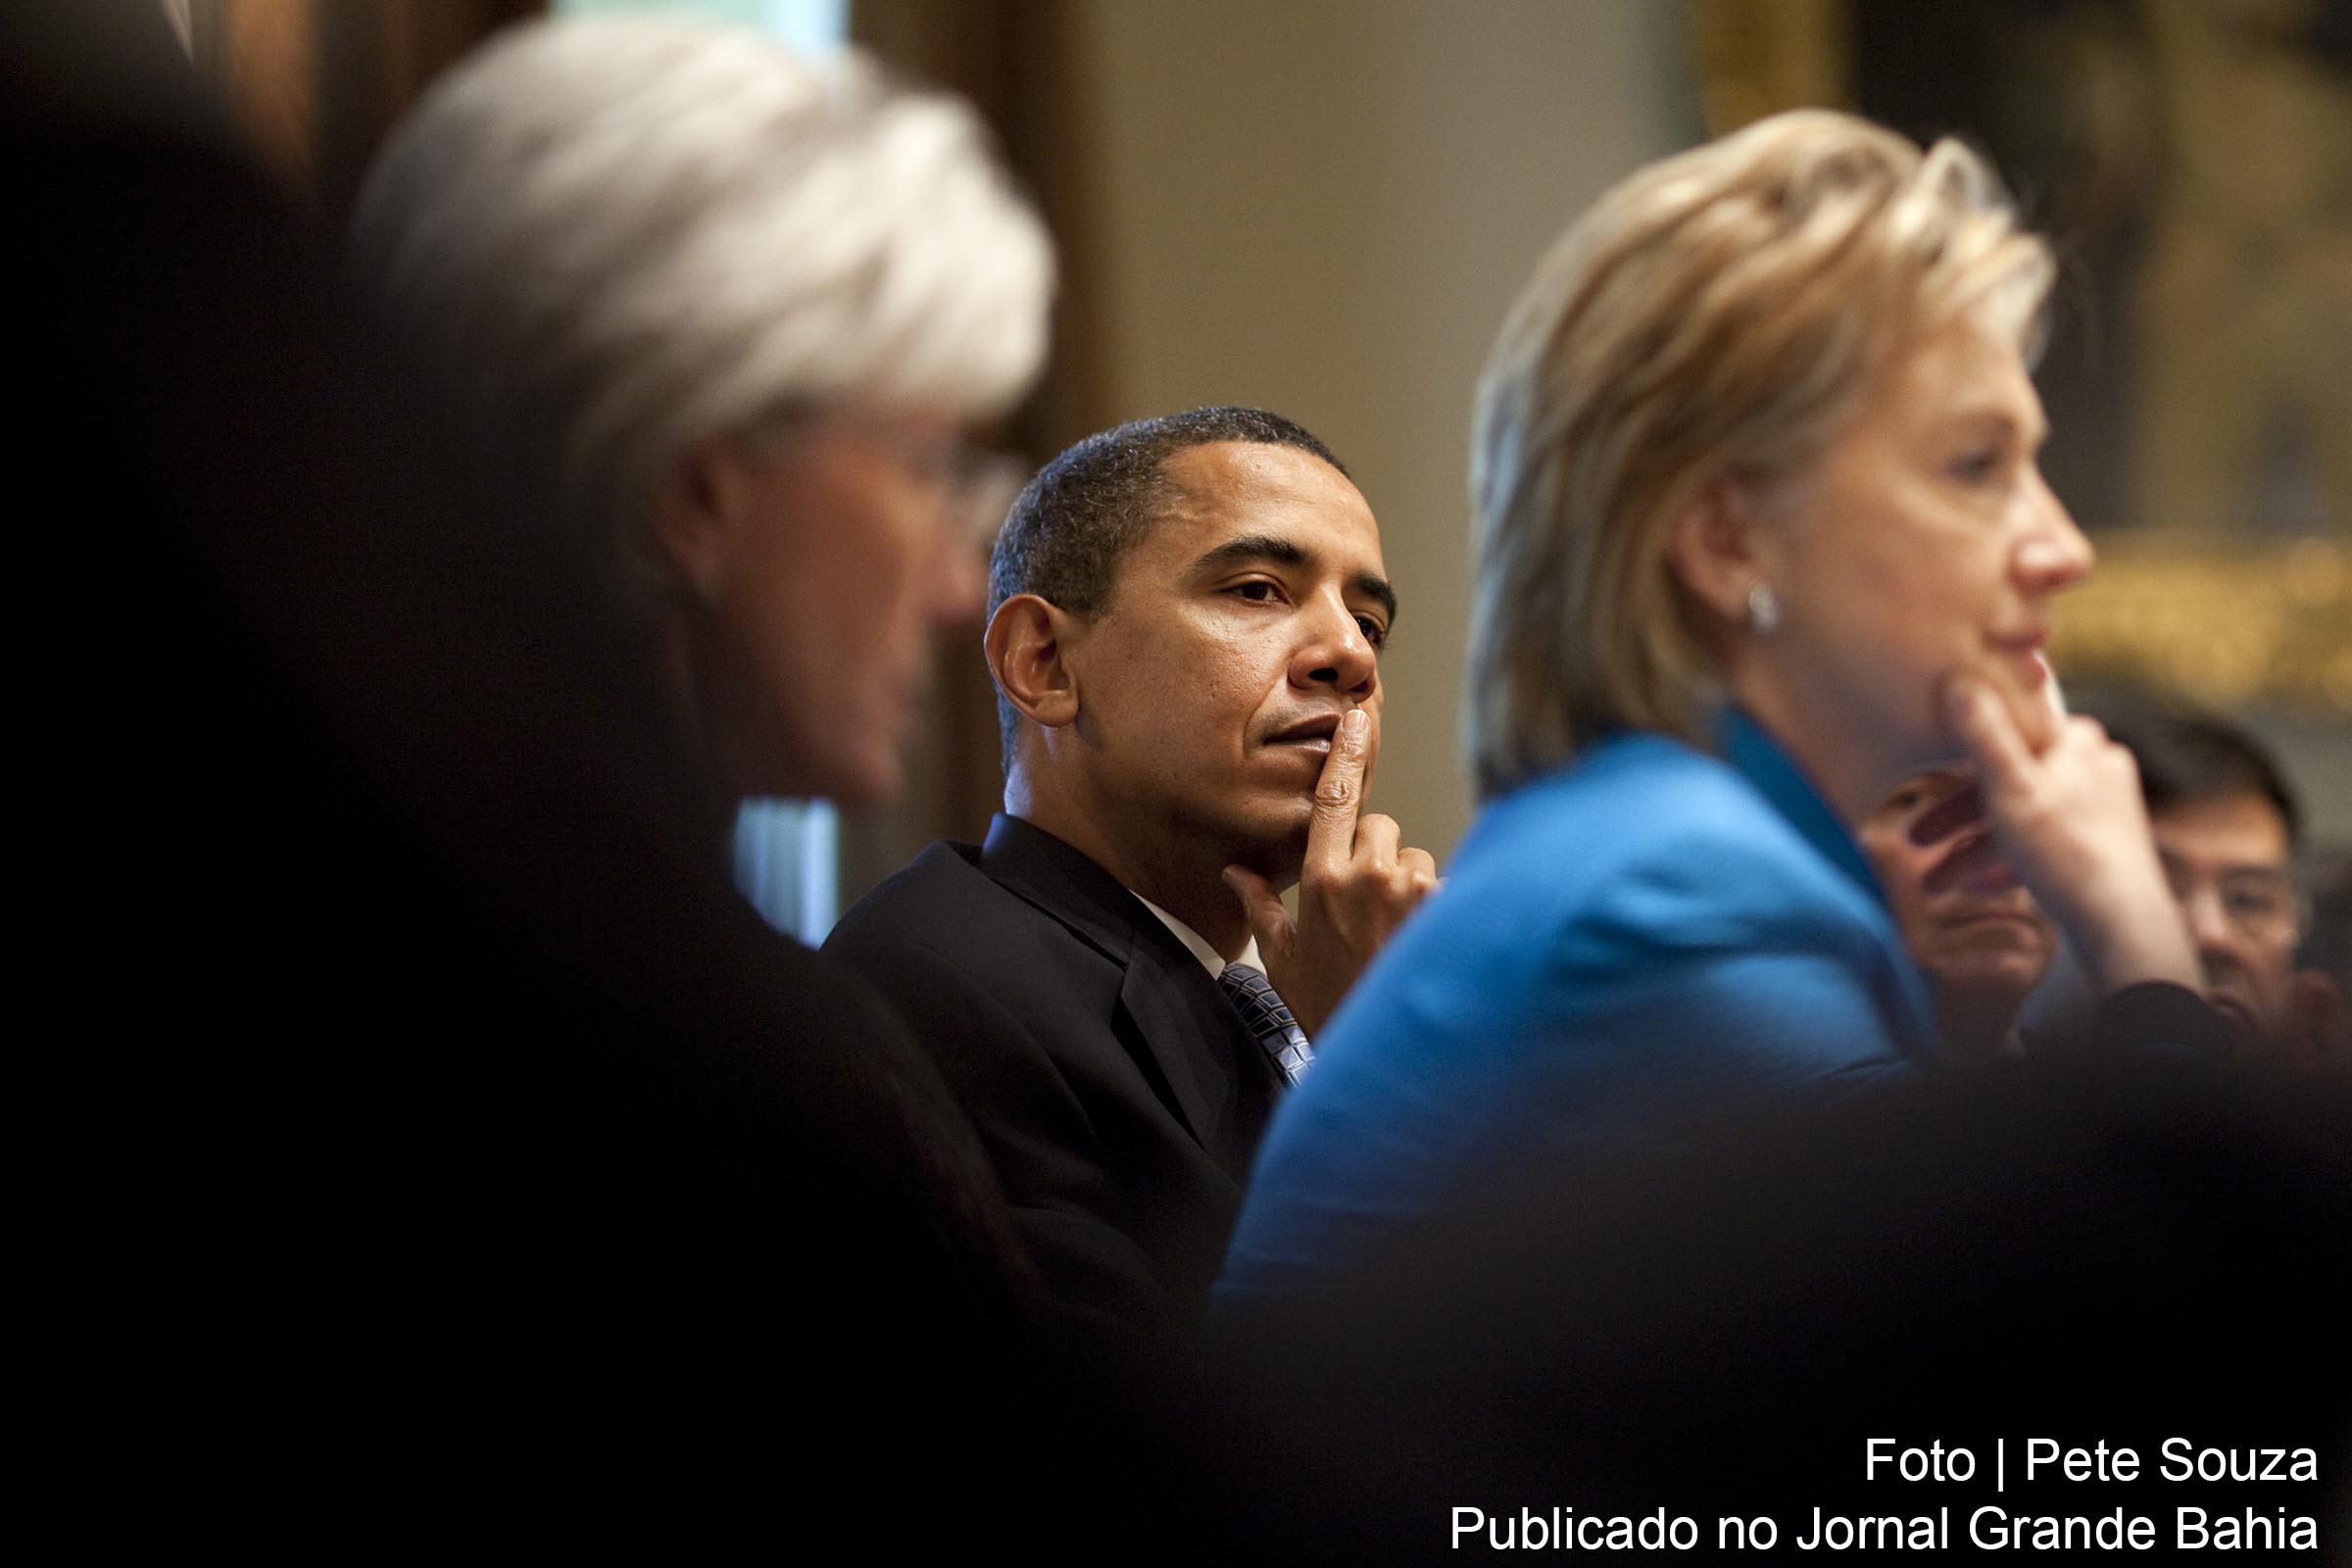 Presidente Barack Obama observa Hillary Clinton, secretaria de Estado dos EUA.